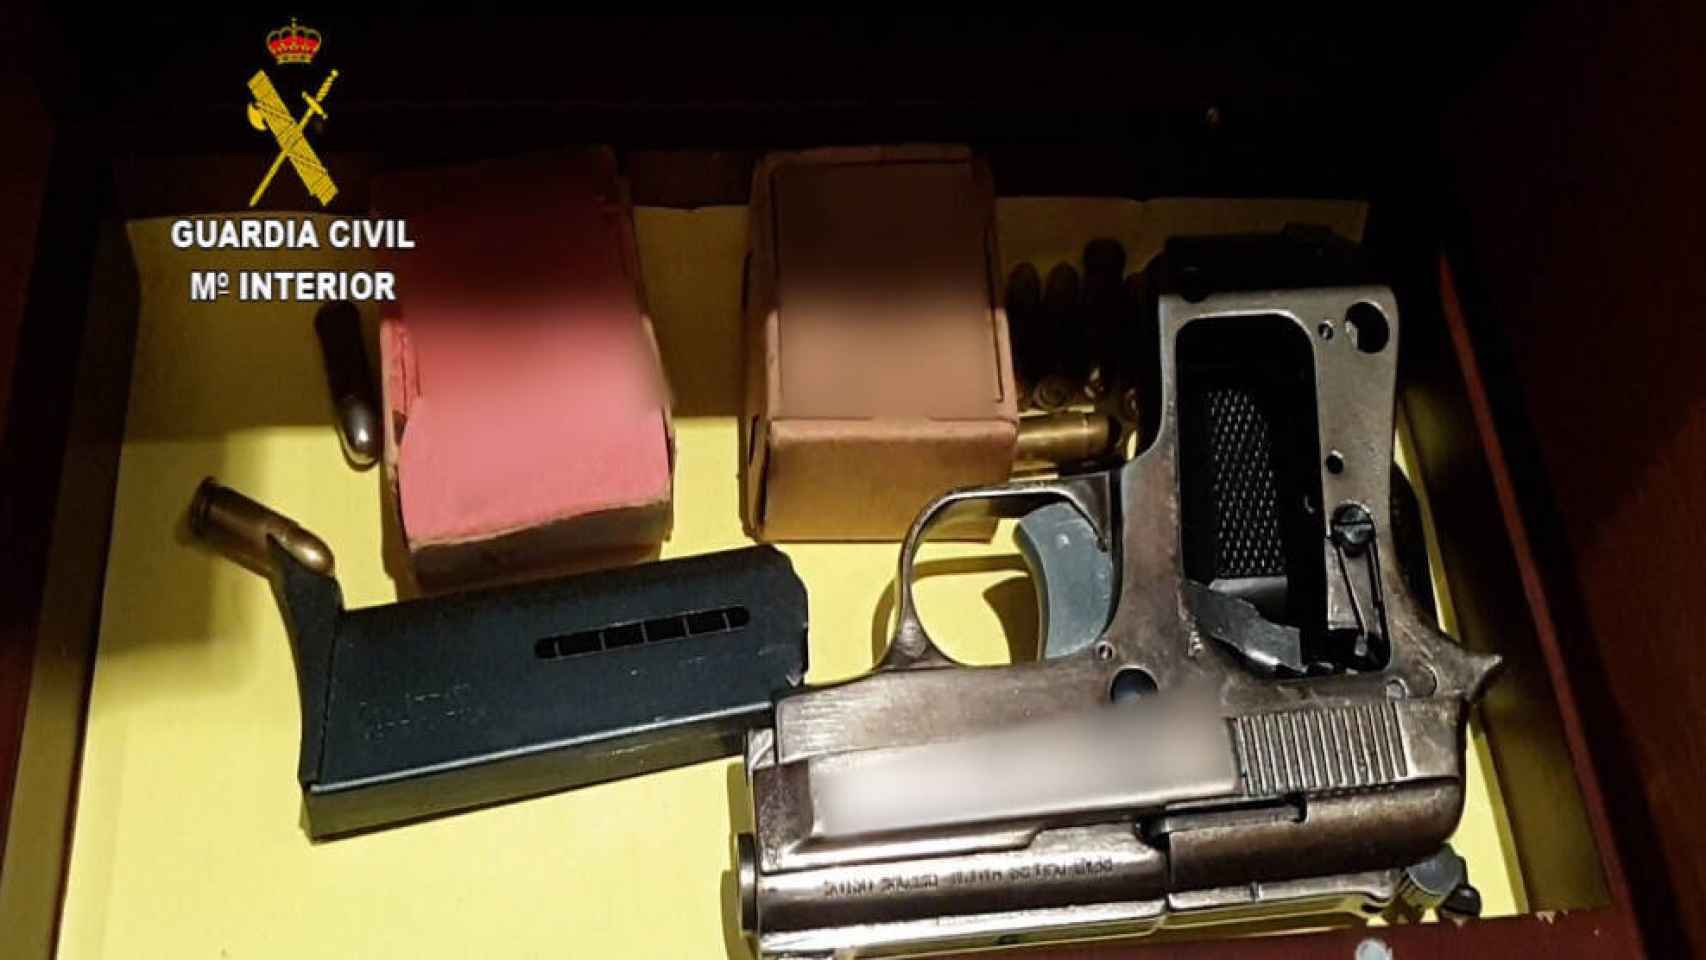 La Guardia Civil intervino una pistola con munición durante uno de los registros